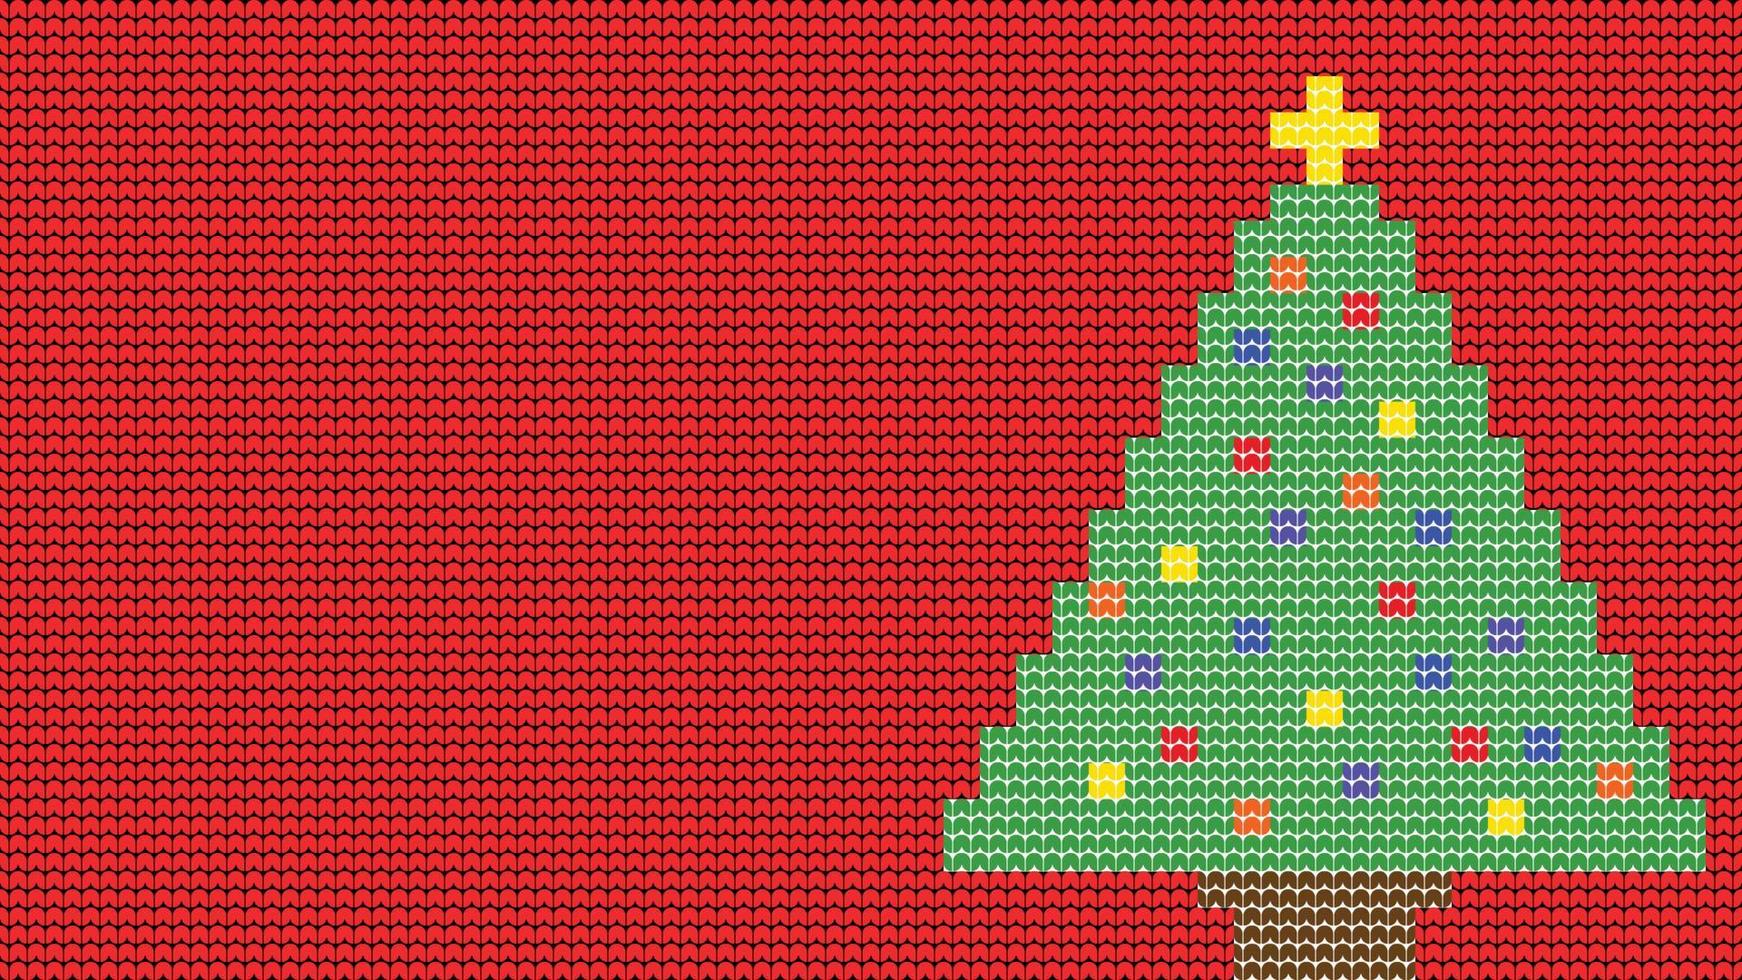 strickende nahtlose mustergrenze auf rotem hintergrund, strickbaum ethnische mustergrenze frohe weihnachten und glückliche wintertage vektorplakat vektor